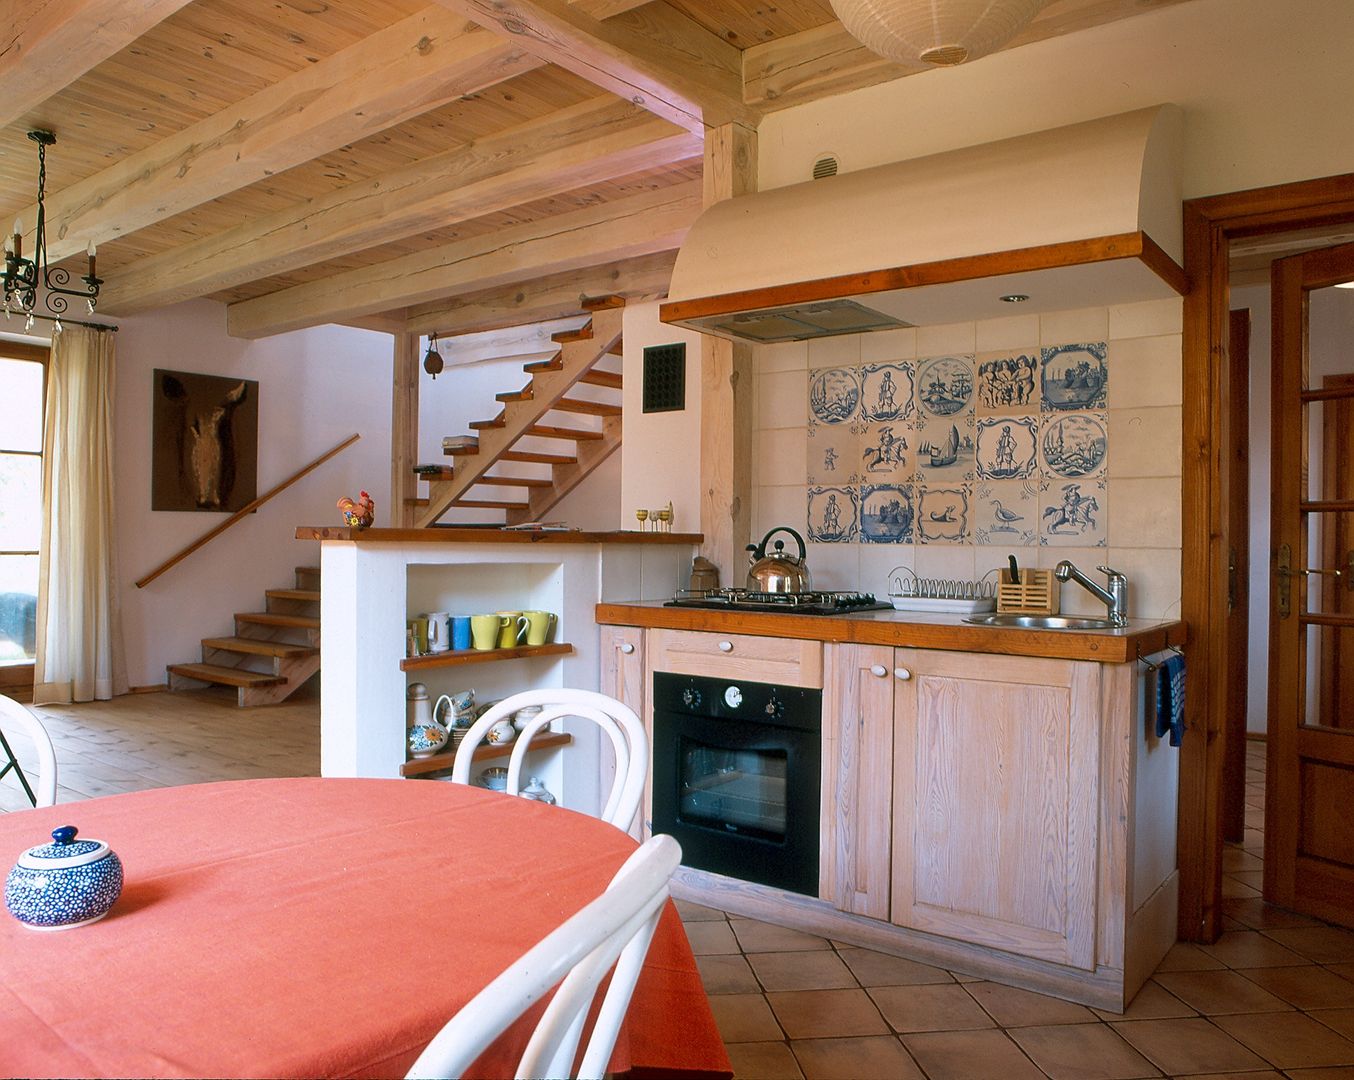 Dom w Hornówku (dom własny), BM-Architekci BM-Architekci Country style kitchen